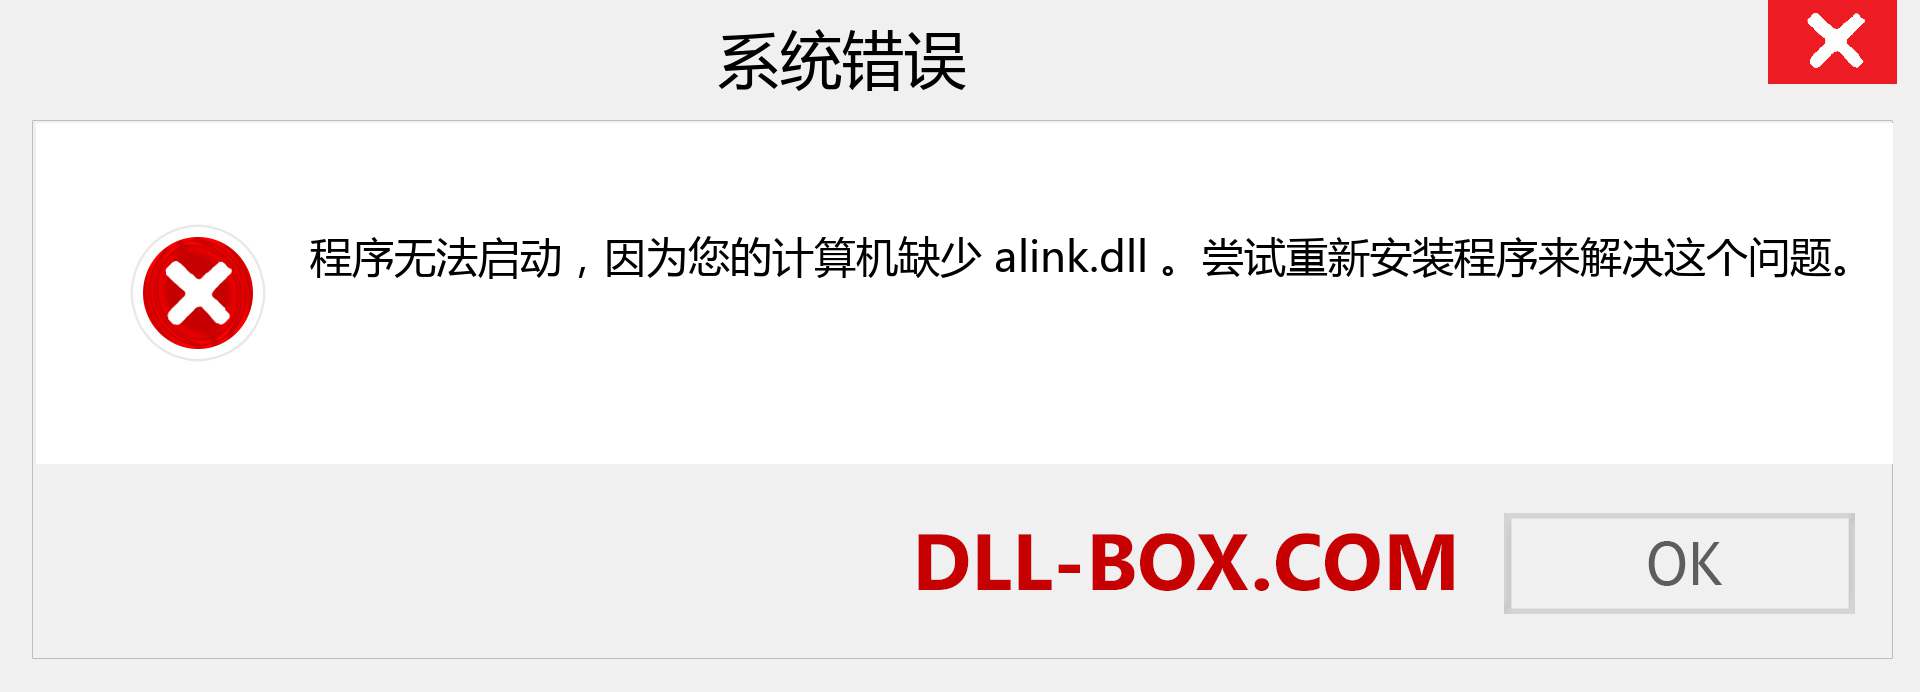 alink.dll 文件丢失？。 适用于 Windows 7、8、10 的下载 - 修复 Windows、照片、图像上的 alink dll 丢失错误